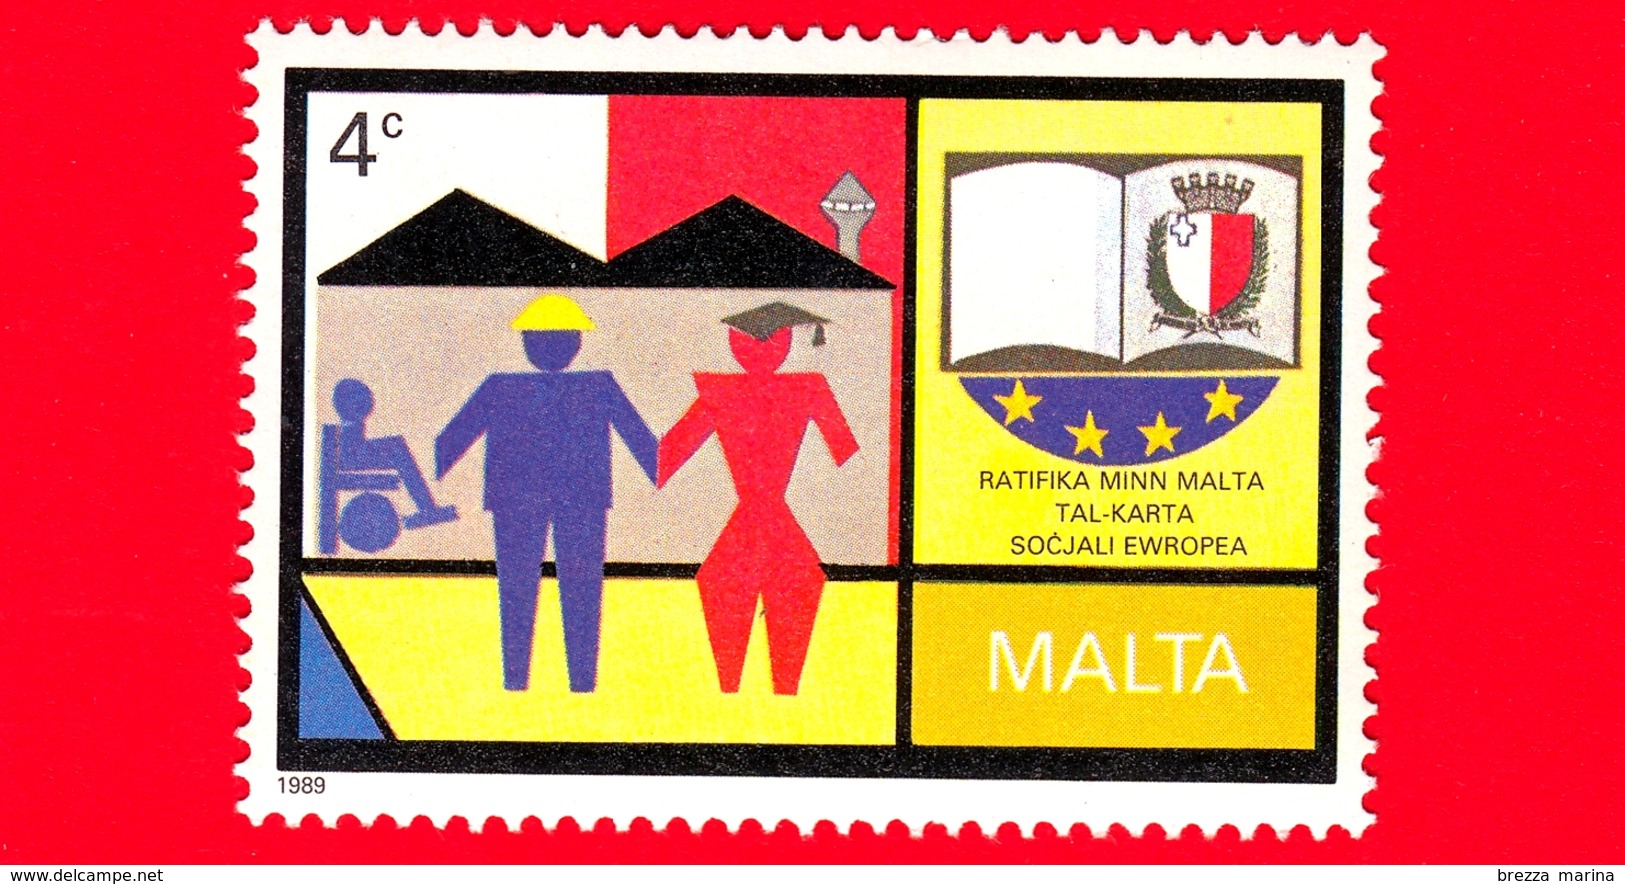 Nuovo - MNH - MALTA - 1989 - Ratifica Da Parte Di Malta Della Carta Sociale Europea - Lavoratori E Figure  - 4 C - Malta